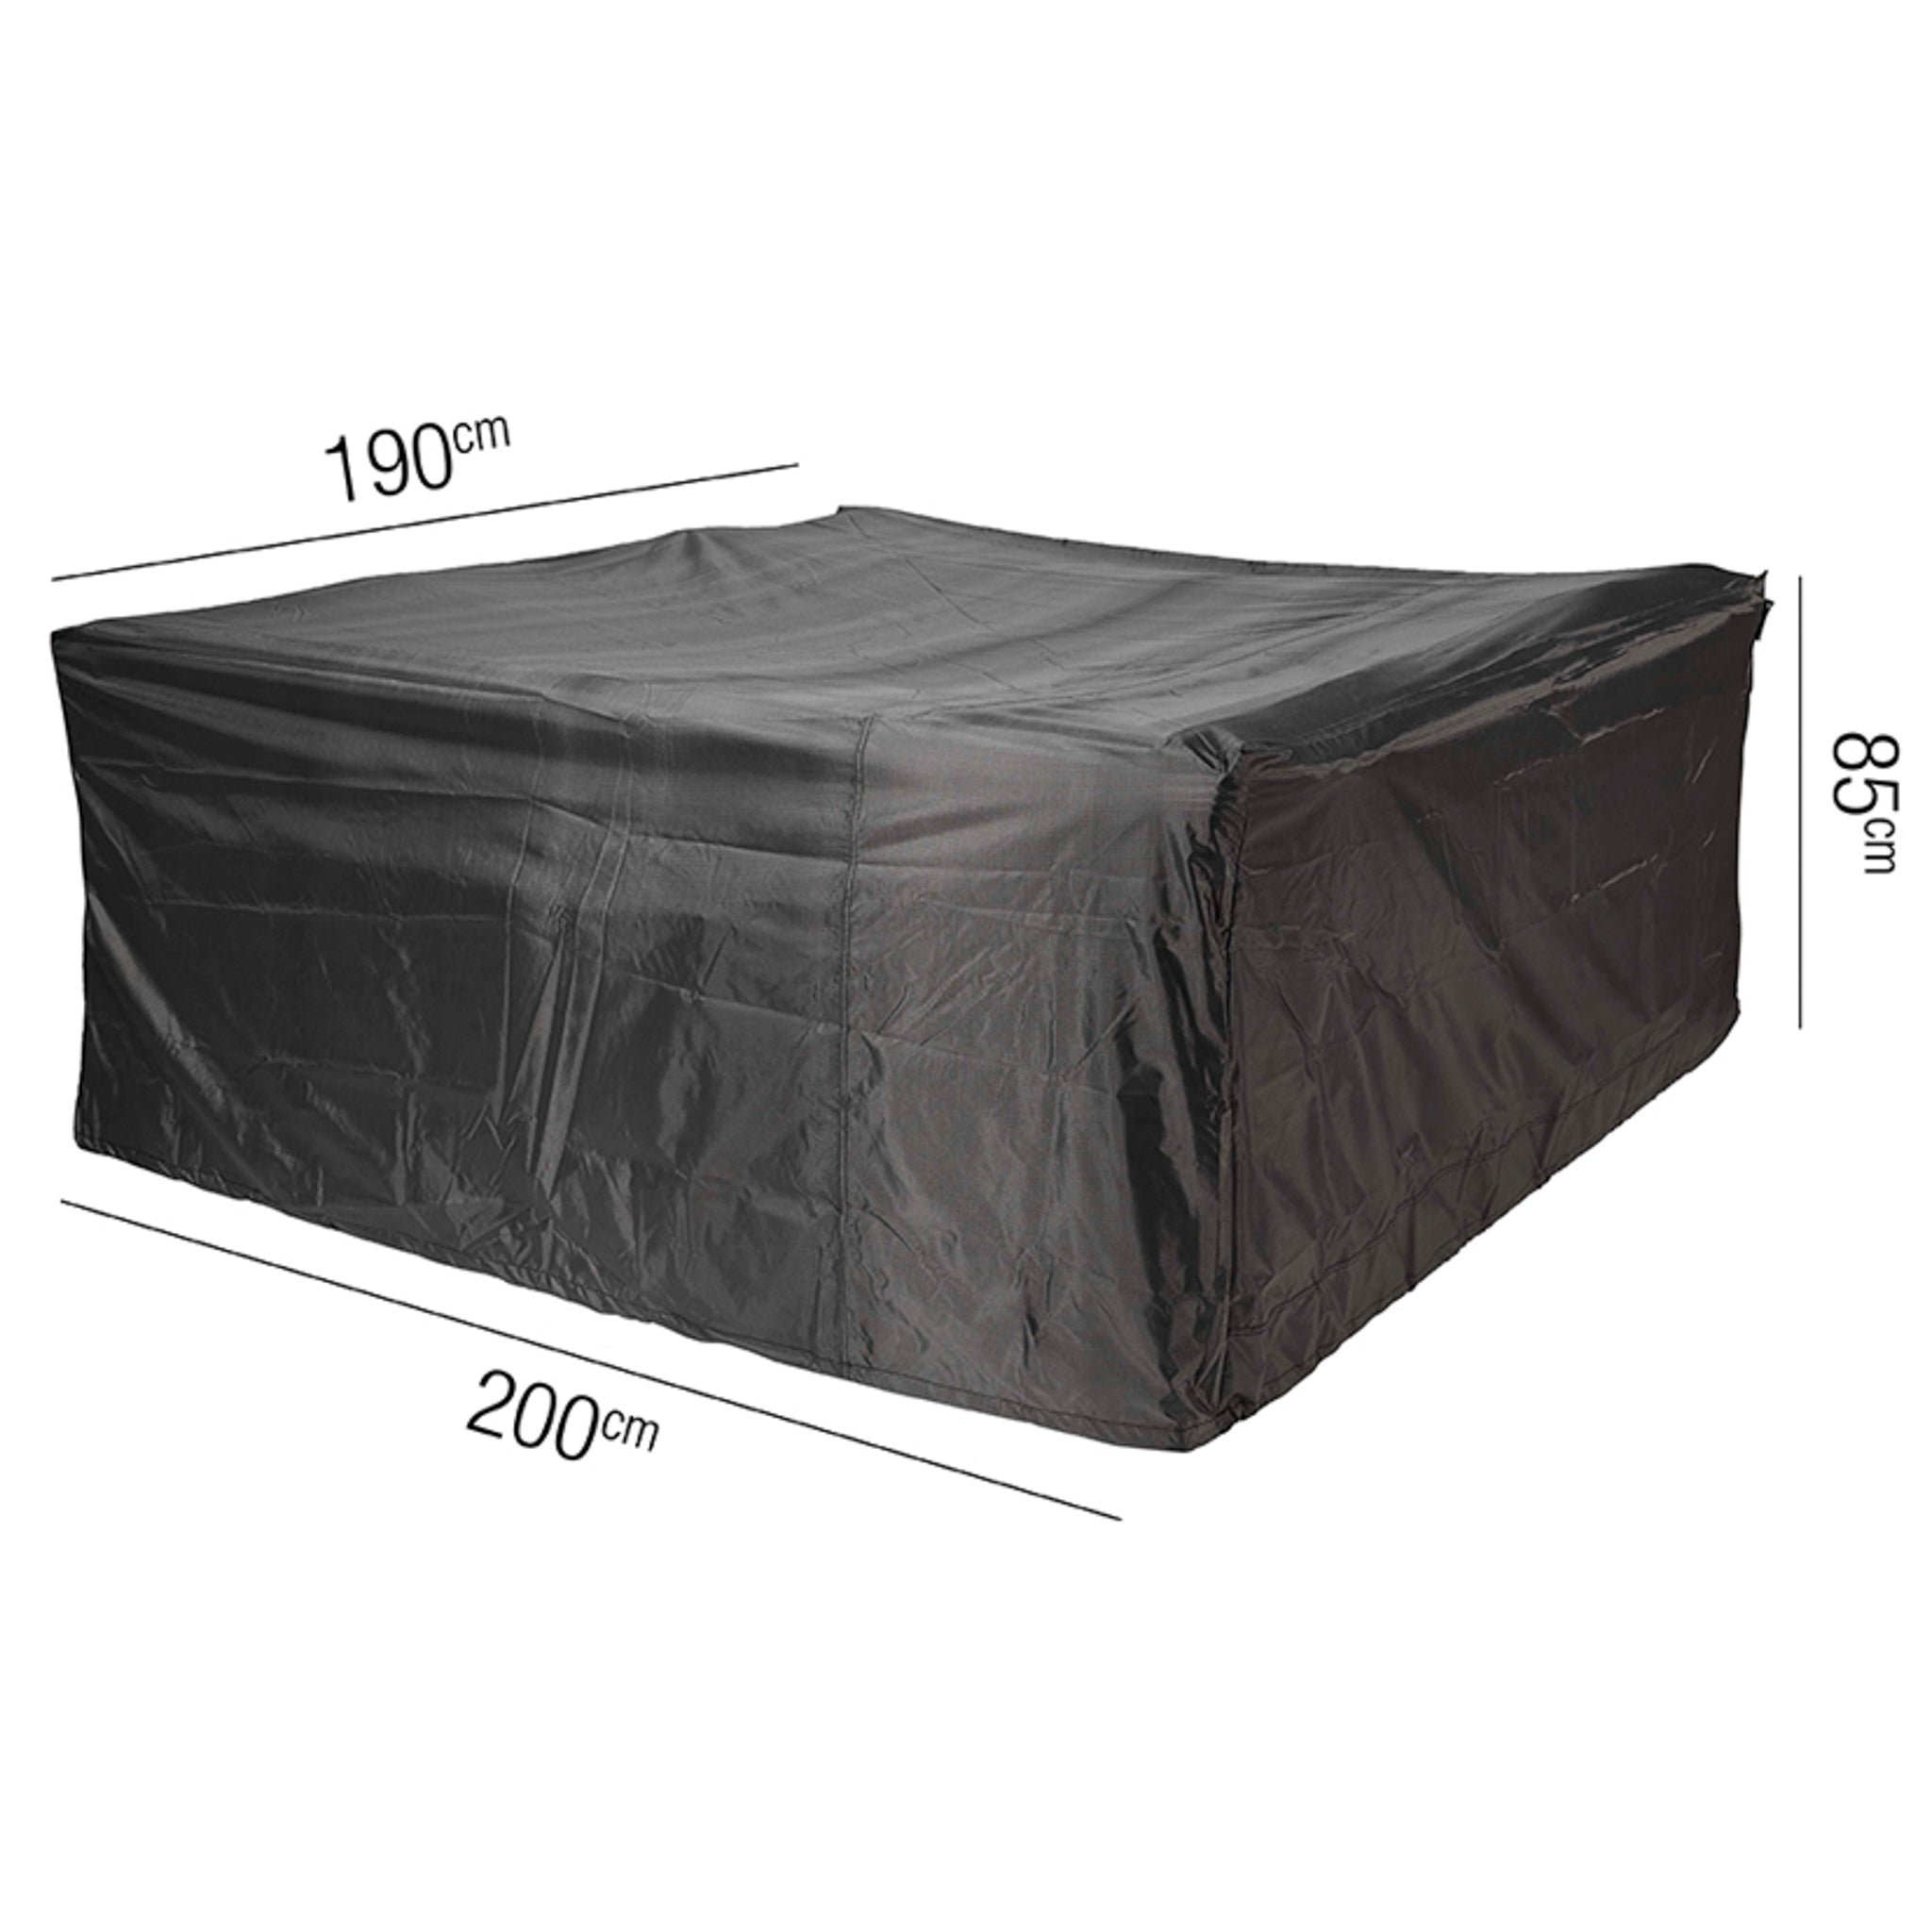 AeroCover - Garden Bench Cover 200 x 190 x 85cm high